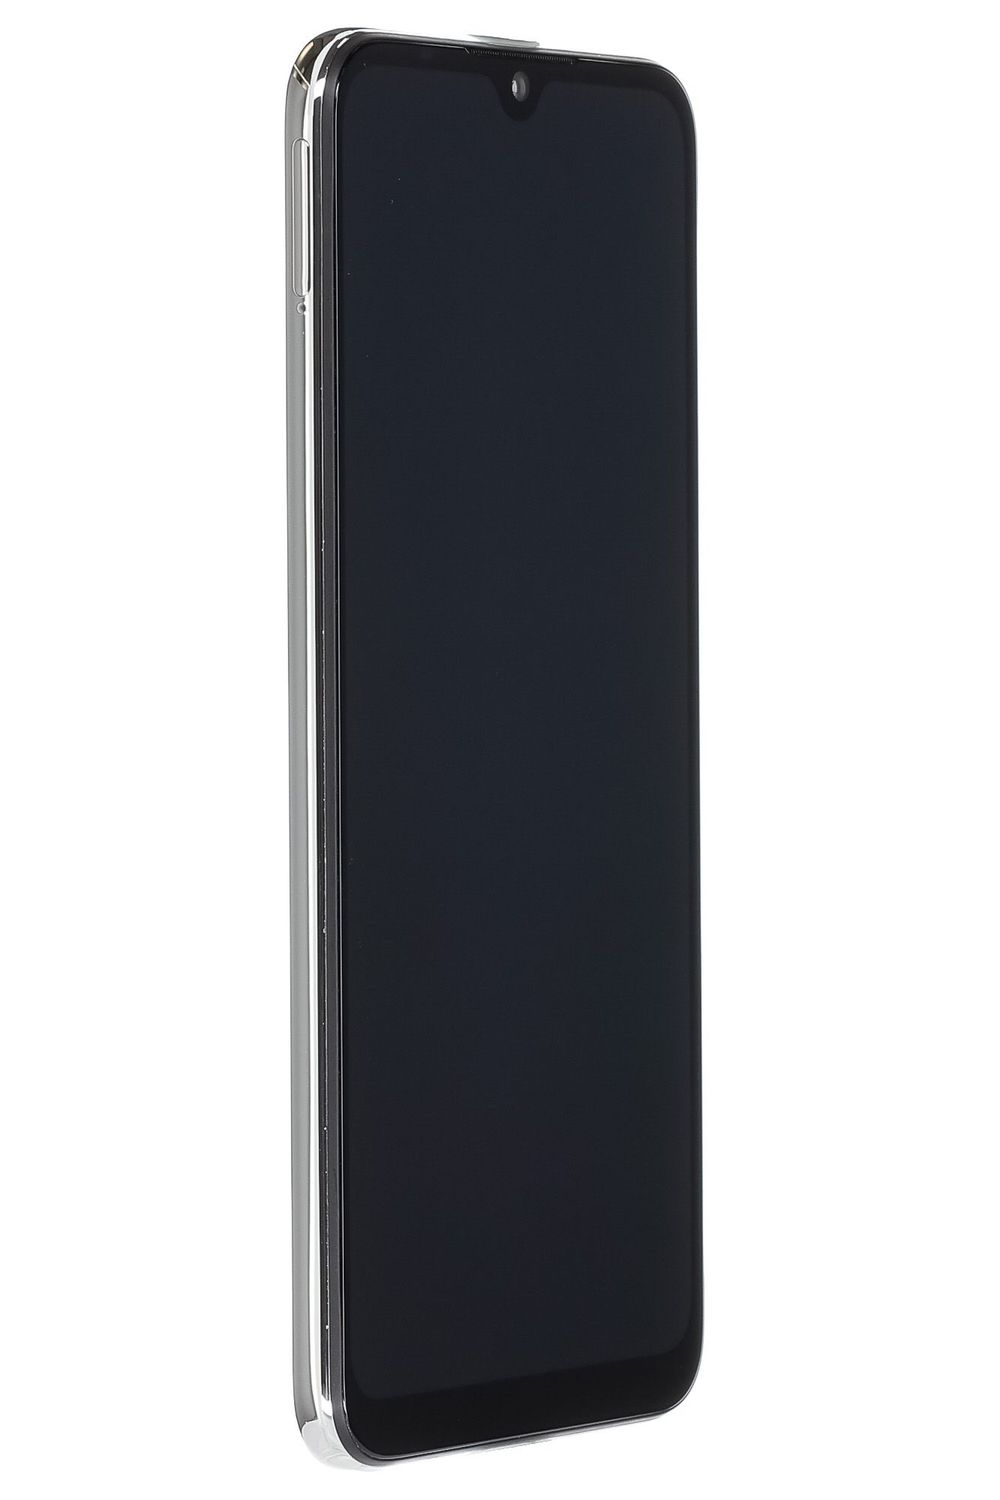 Telefon mobil Xiaomi Mi A3, More Than White, 128 GB, Bun